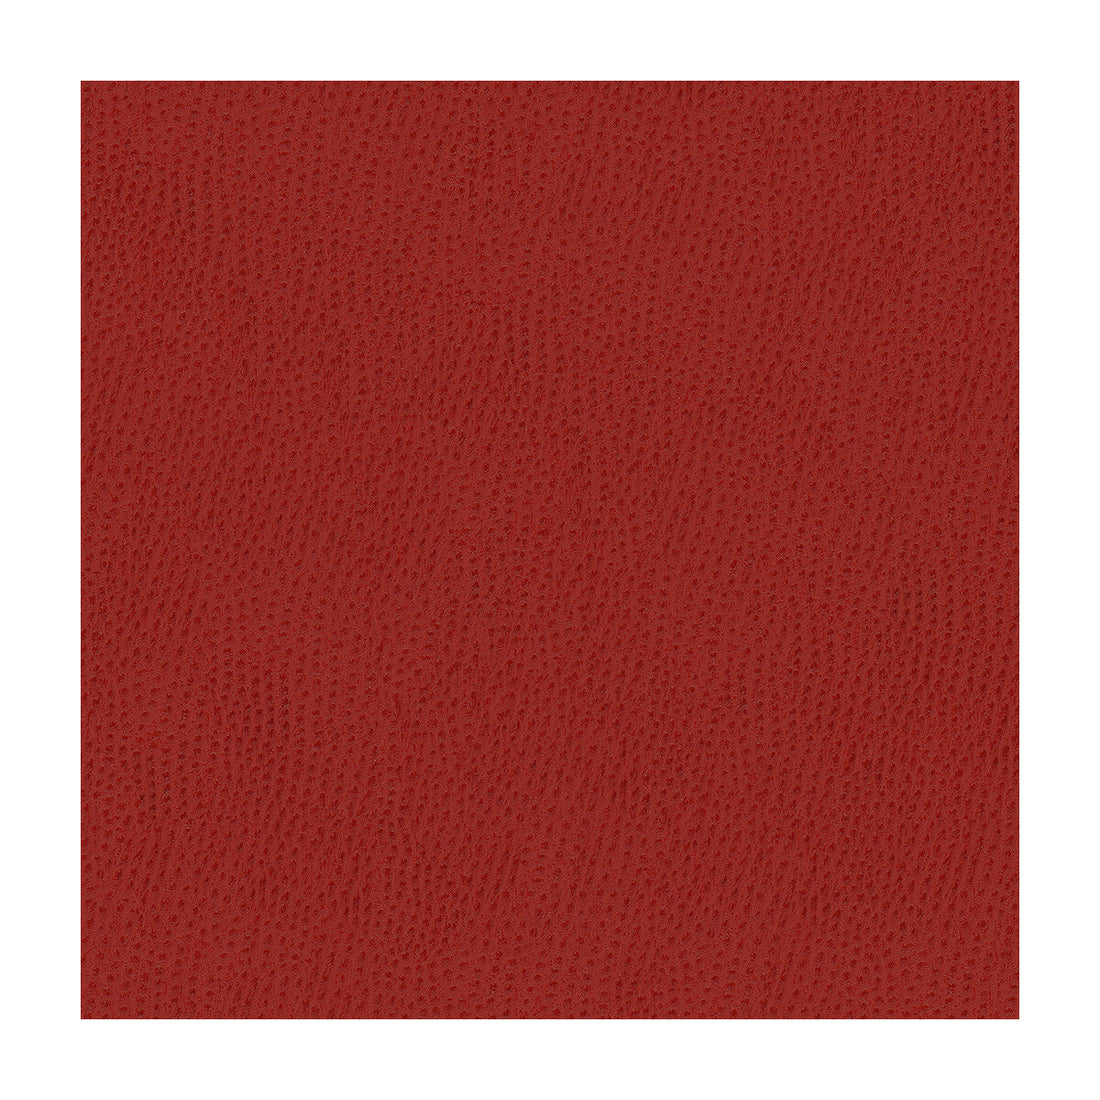 Kravet Smart fabric in ossy-19 color - pattern OSSY.19.0 - by Kravet Smart